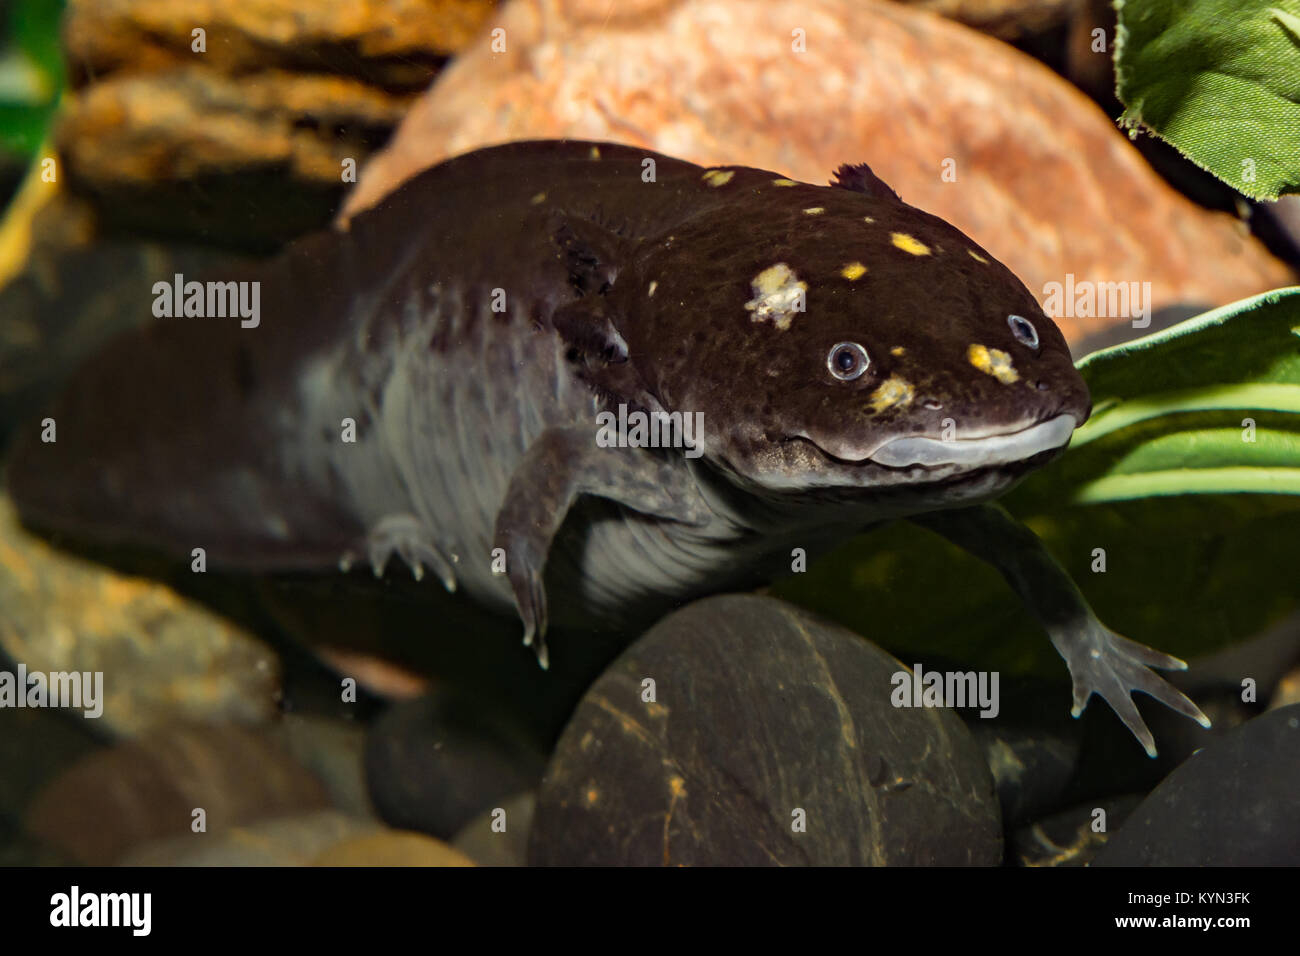 A close up of a Mexican Axolotl Stock Photo